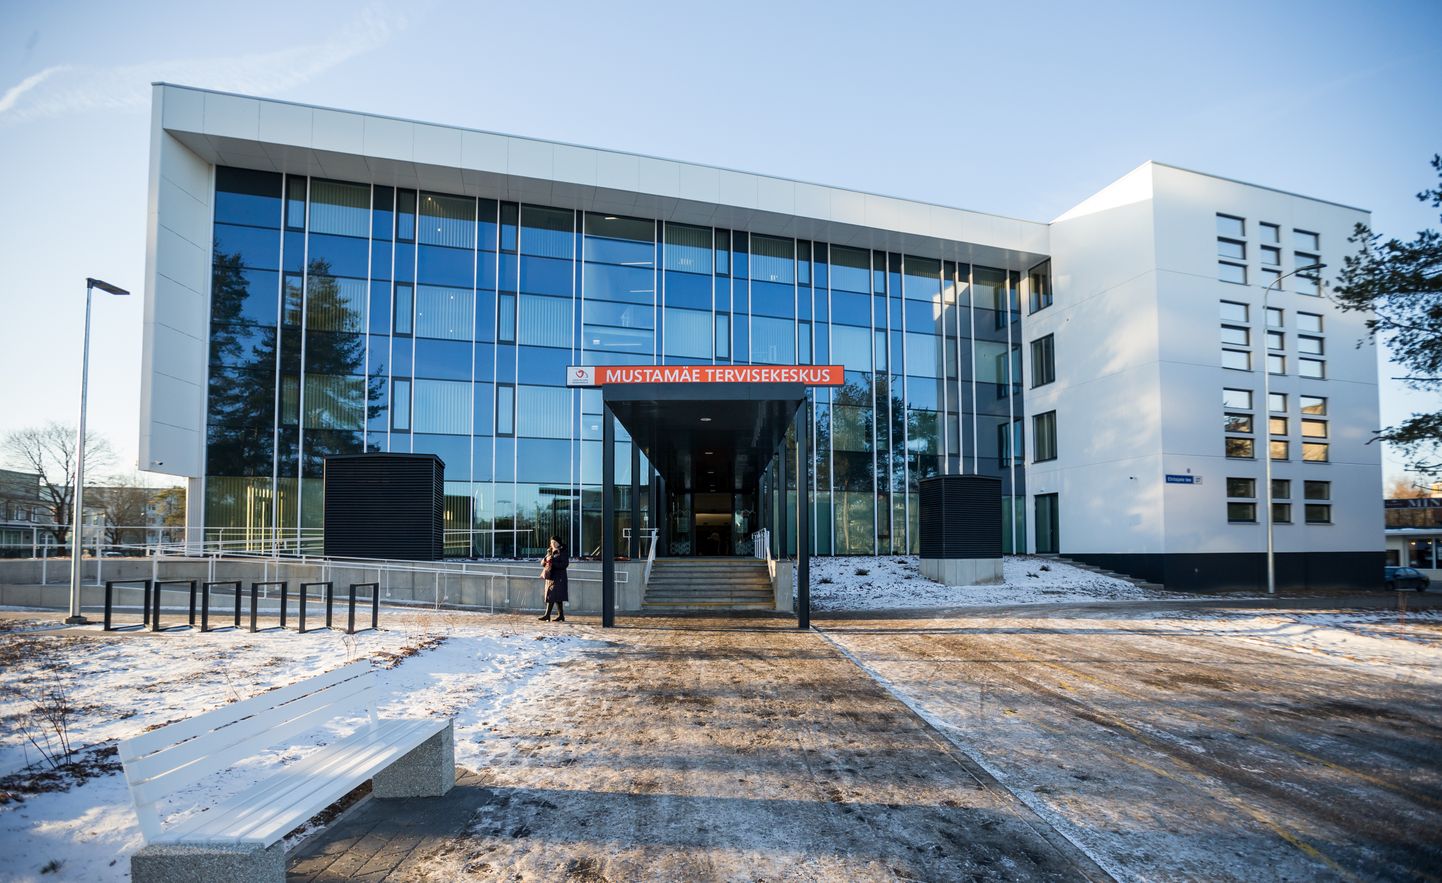 Regionaalarengu fondi toel kerkib Tallinna seitse tervisekeskust. 2018. aastal sai valmis esimene, Mustamäe tervisekeskus.